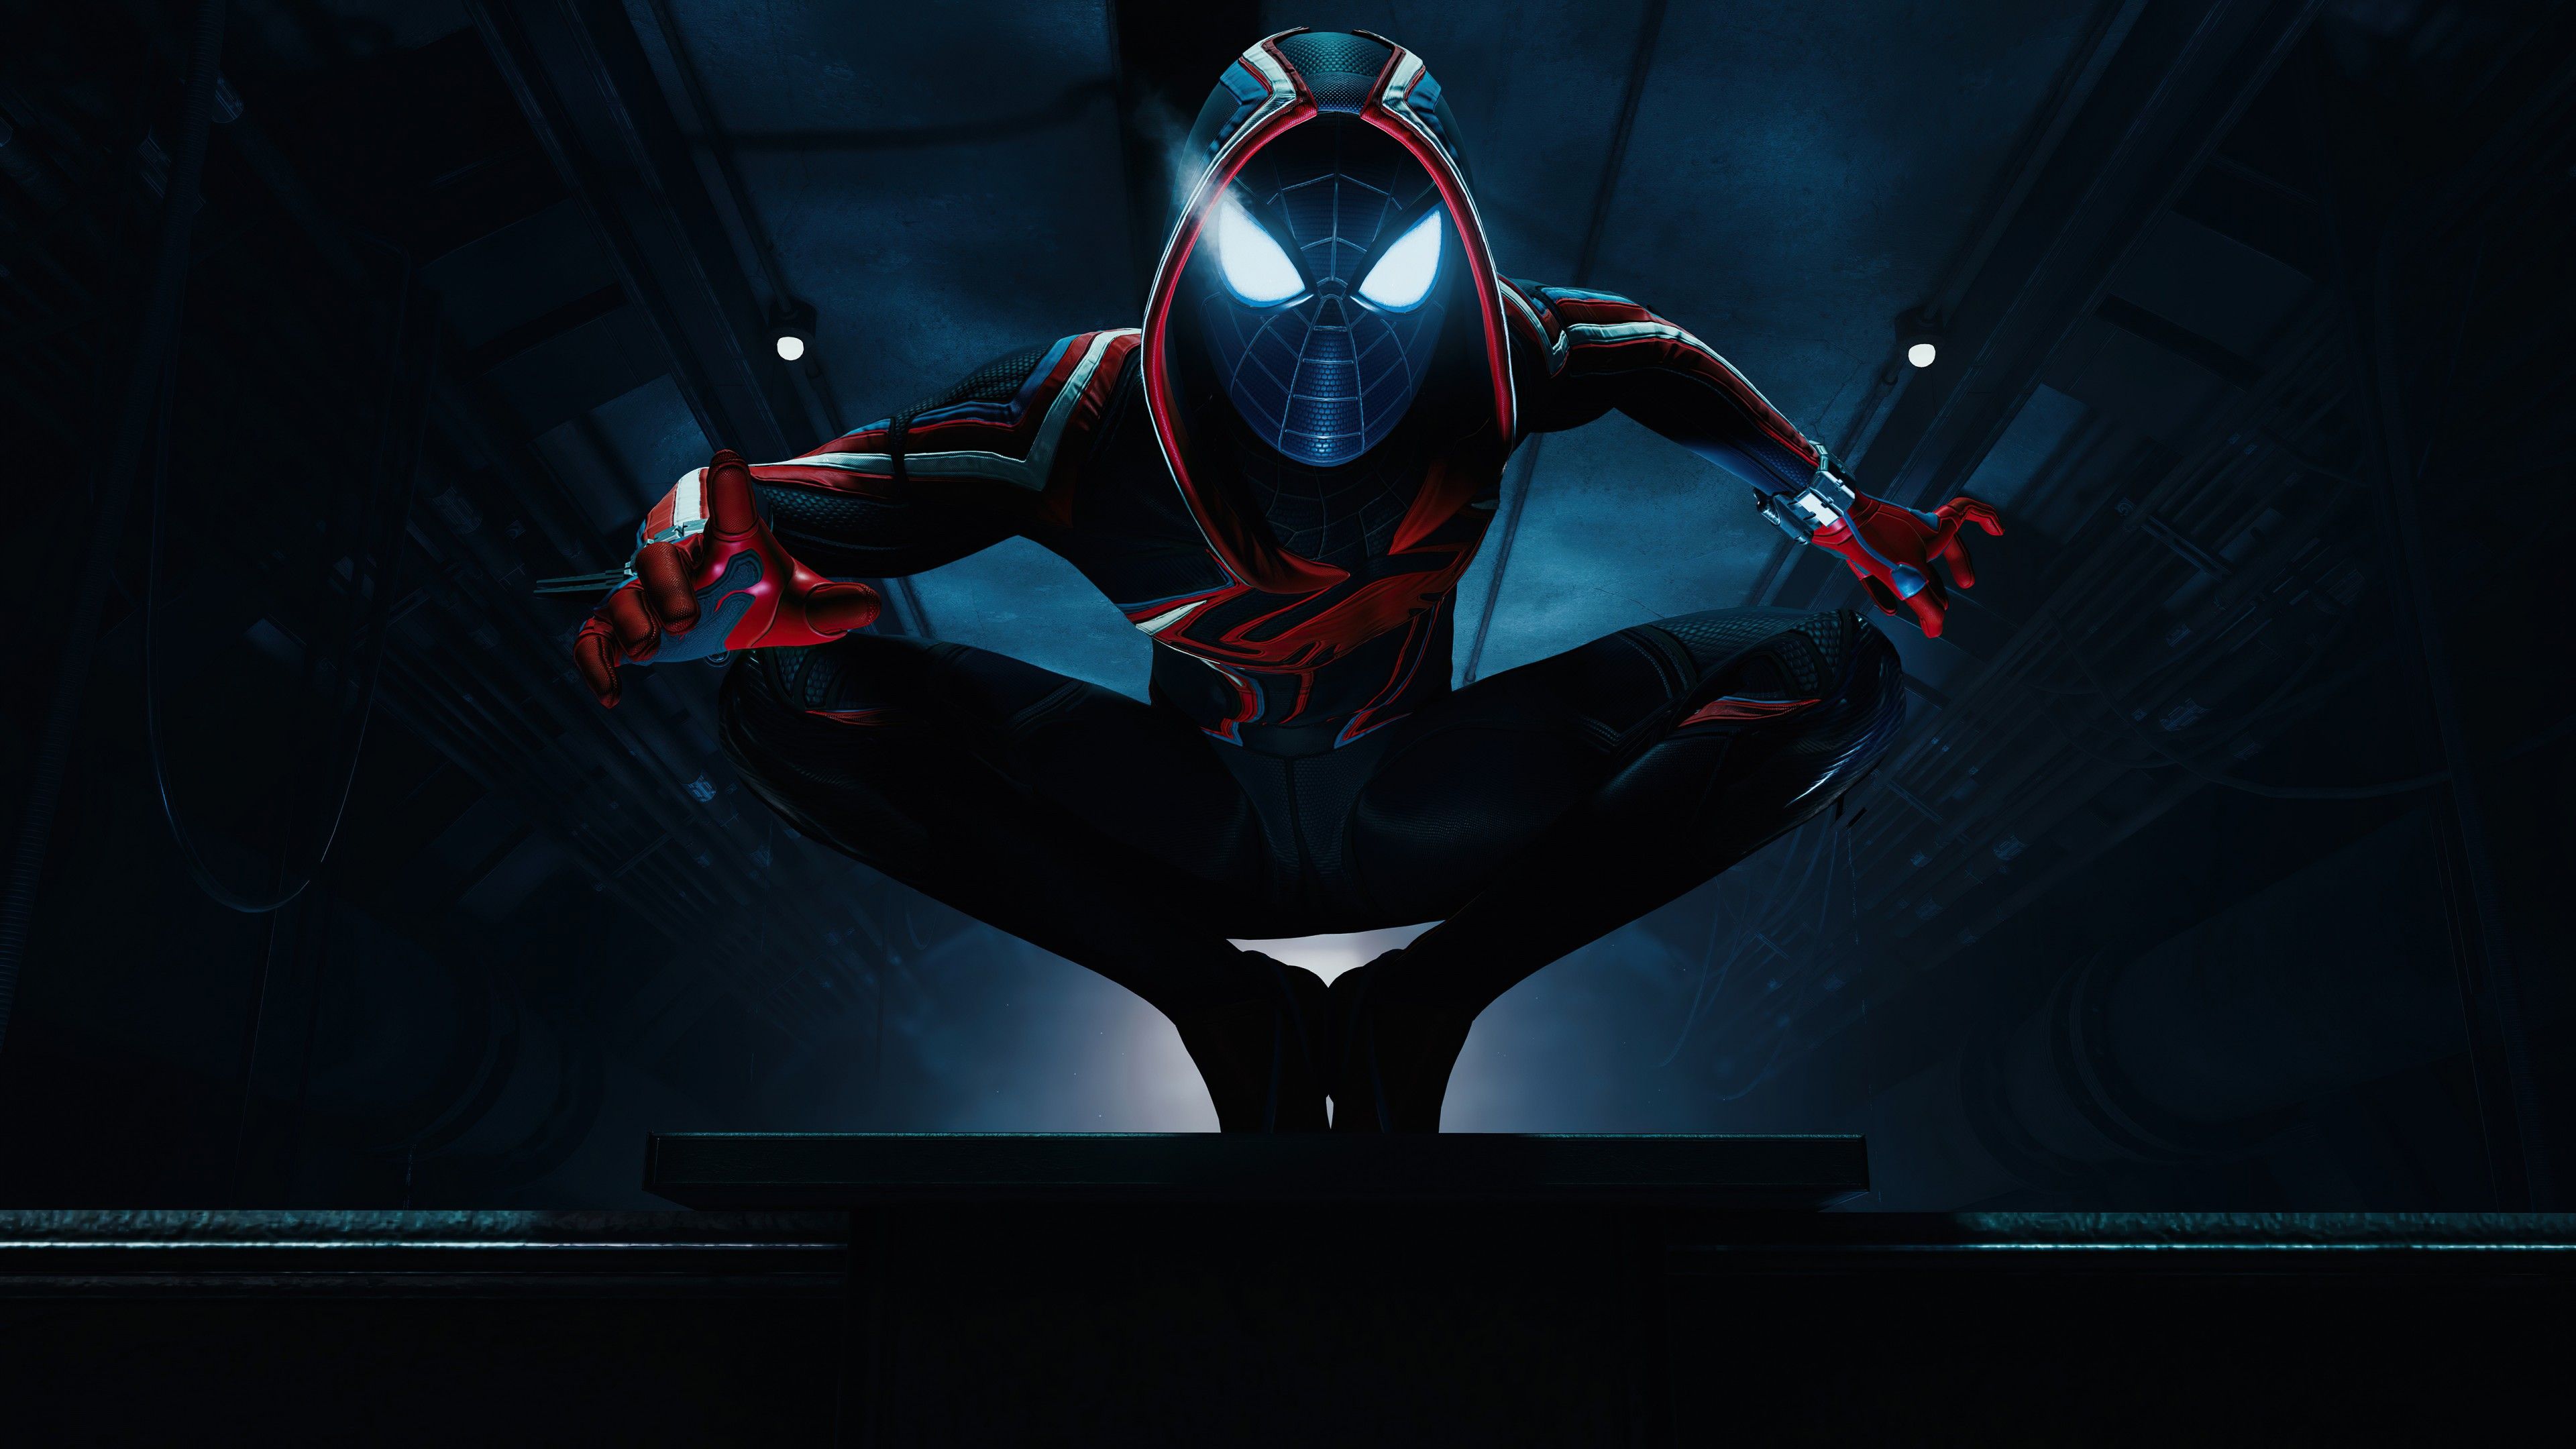 Marvel's Spider Man: Miles Morales 4K Wallpaper, Photo Mode, Dark Background, PlayStation 2020 Games, 5K, Games